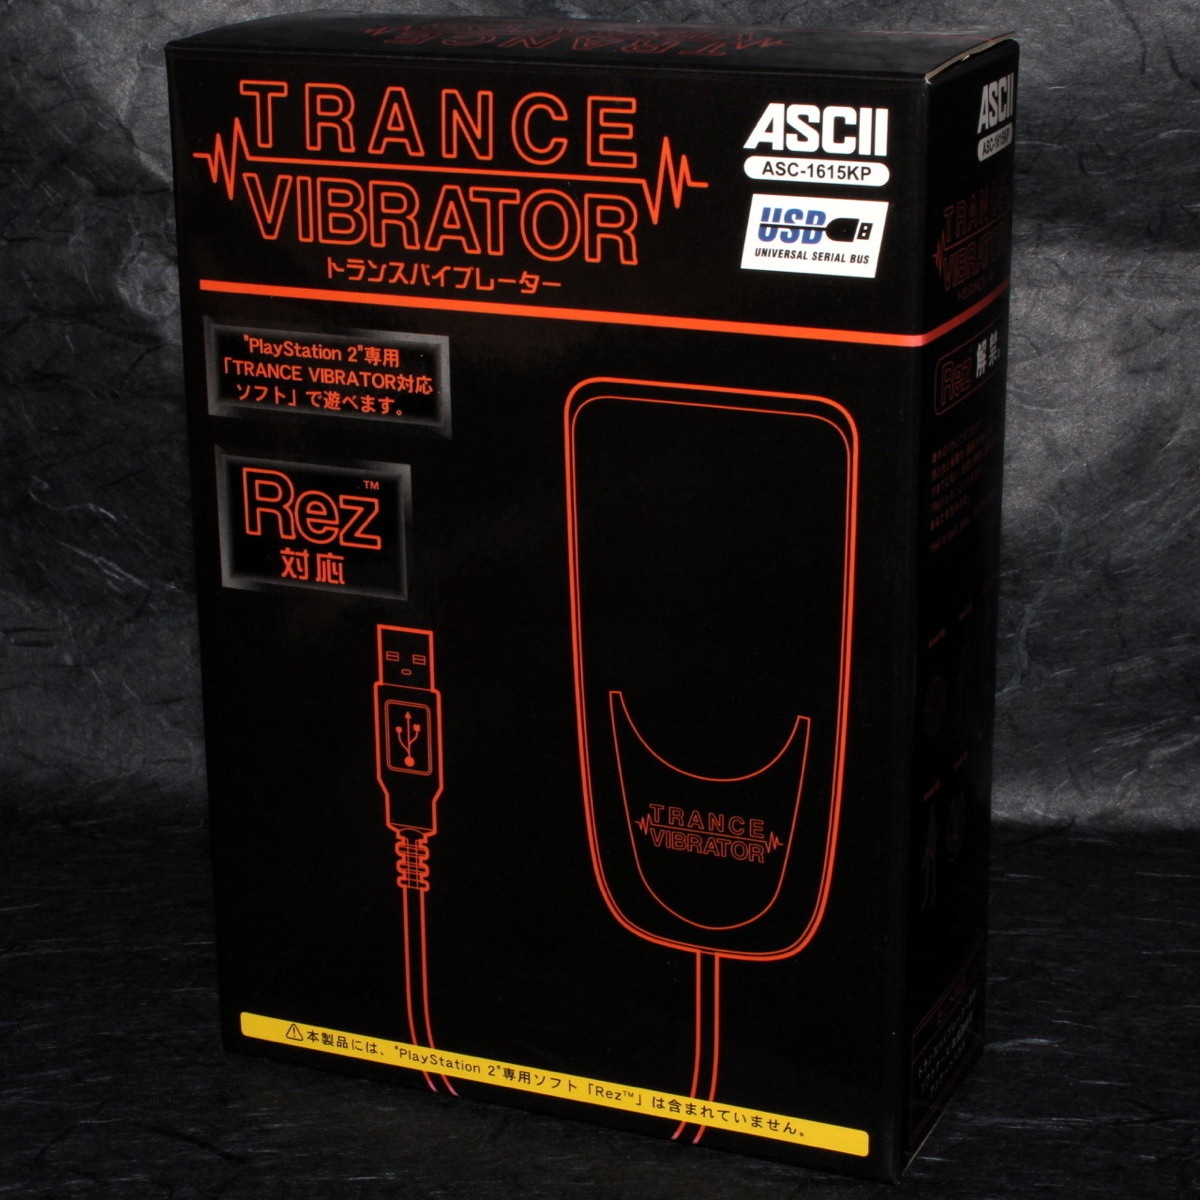 The trance vibrator